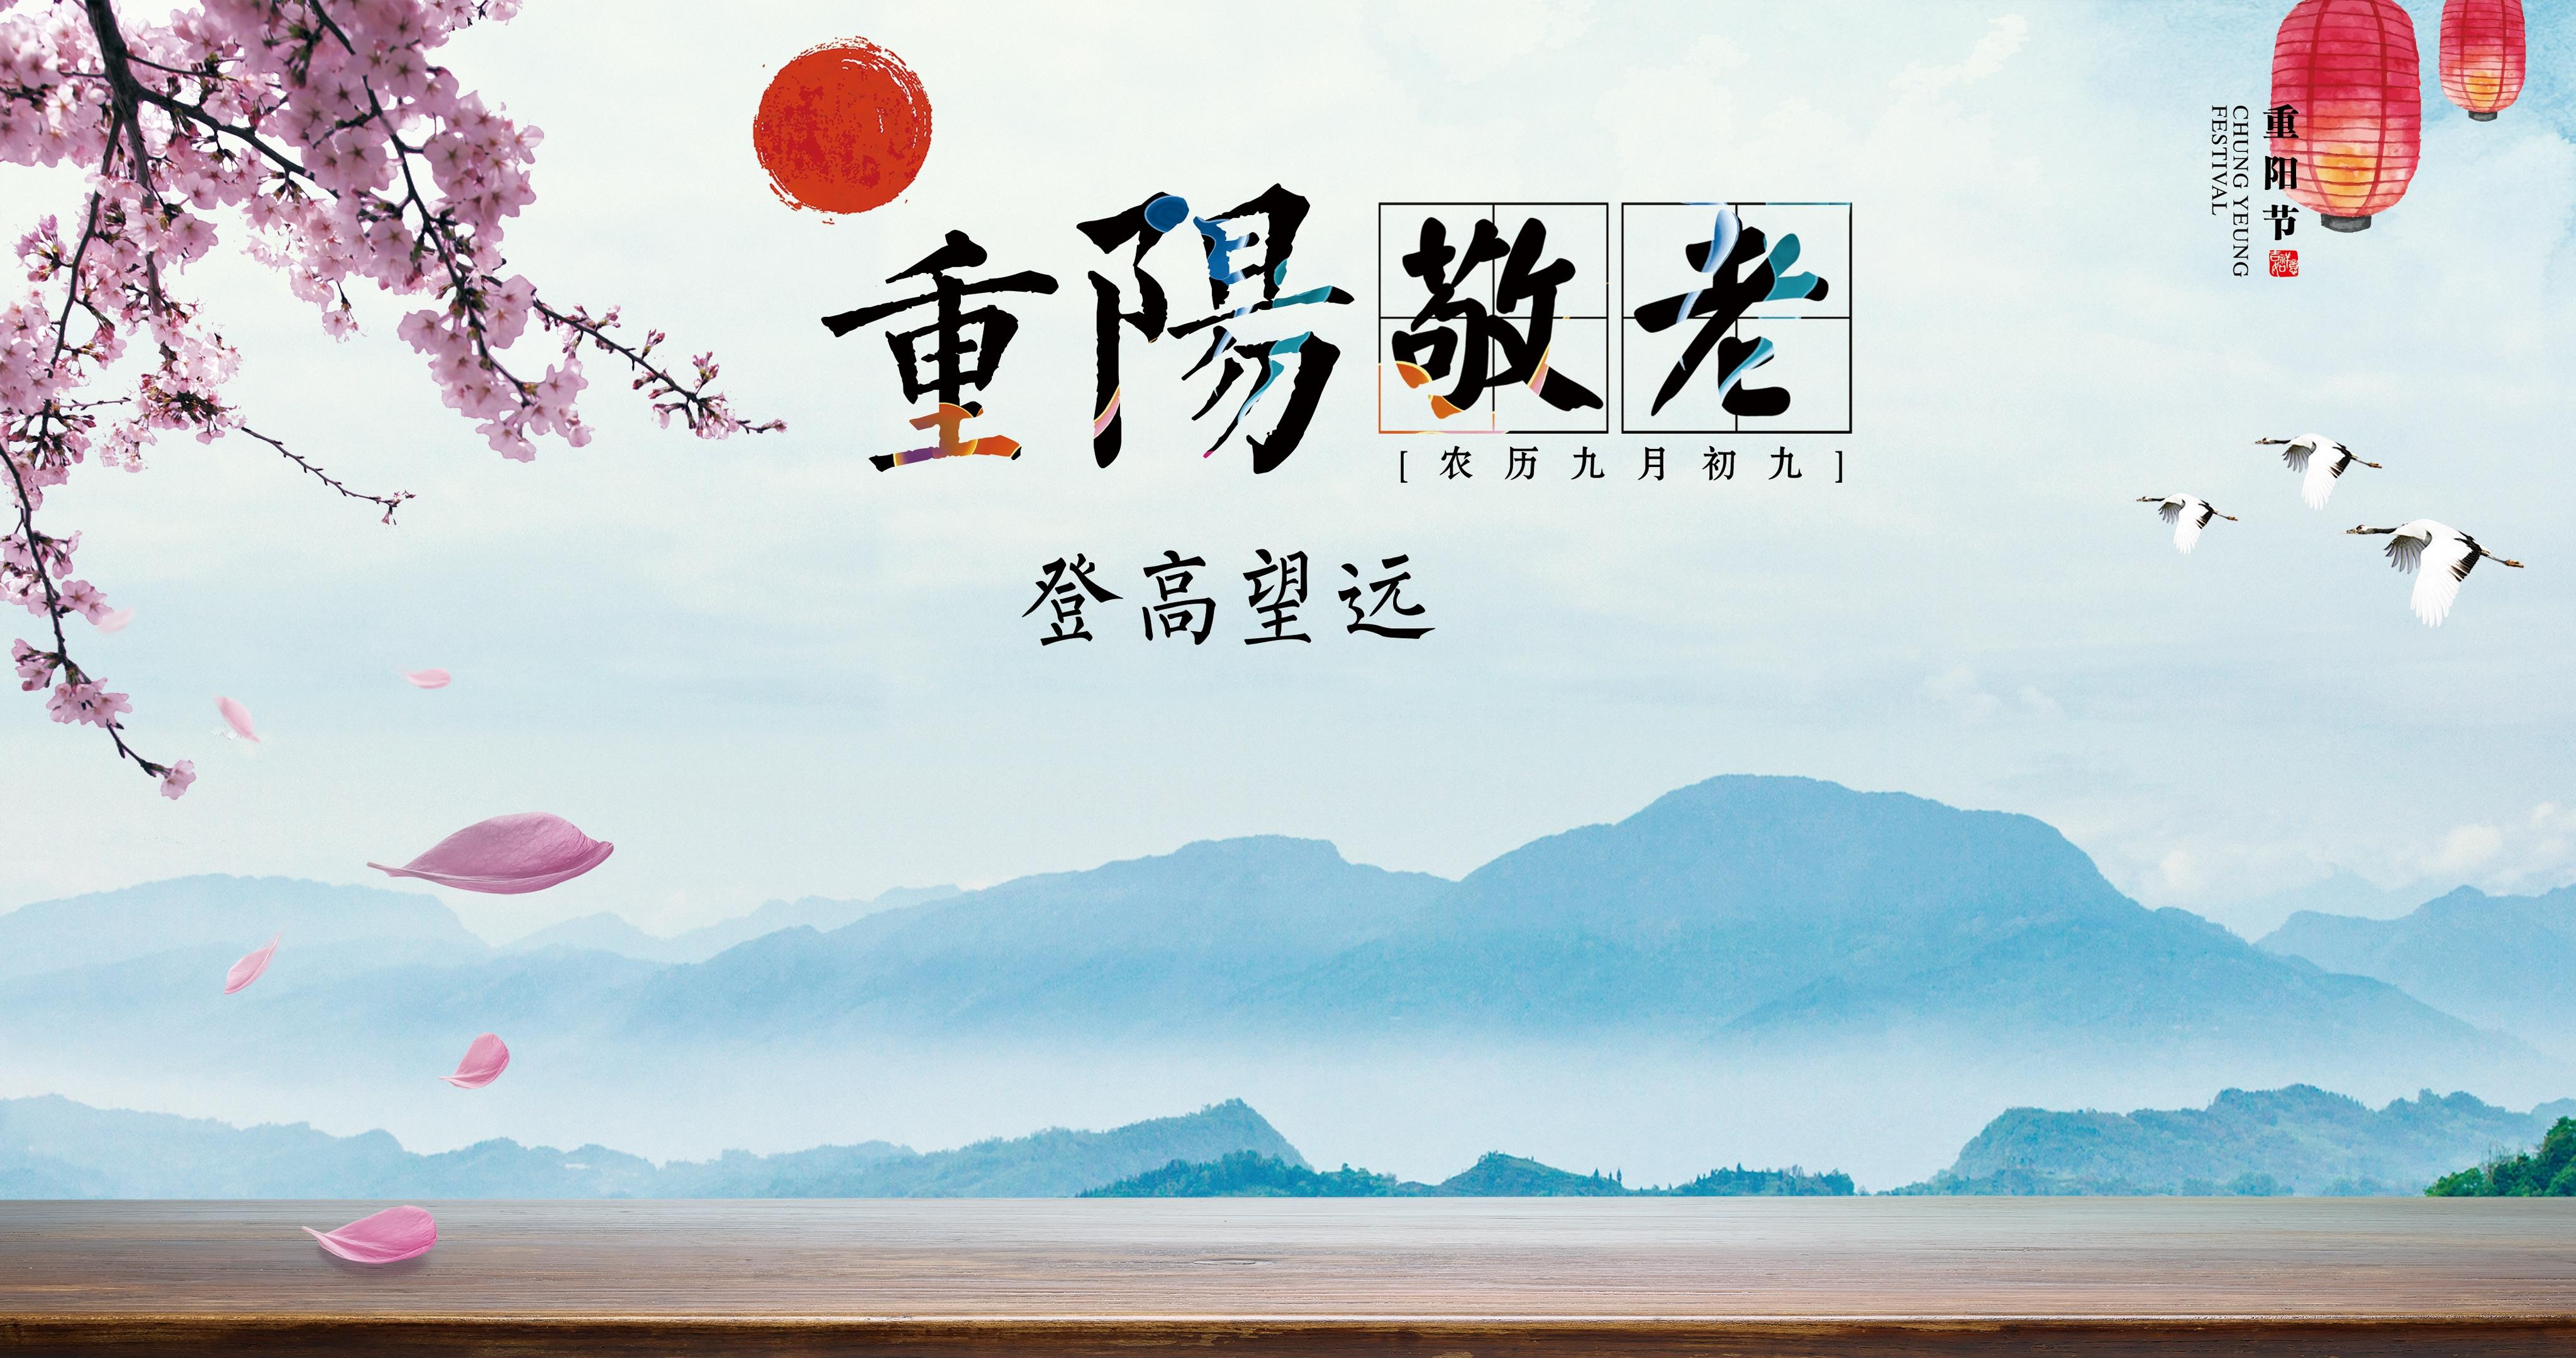 重阳节节日祝福插画手机海报_图片模板素材-稿定设计